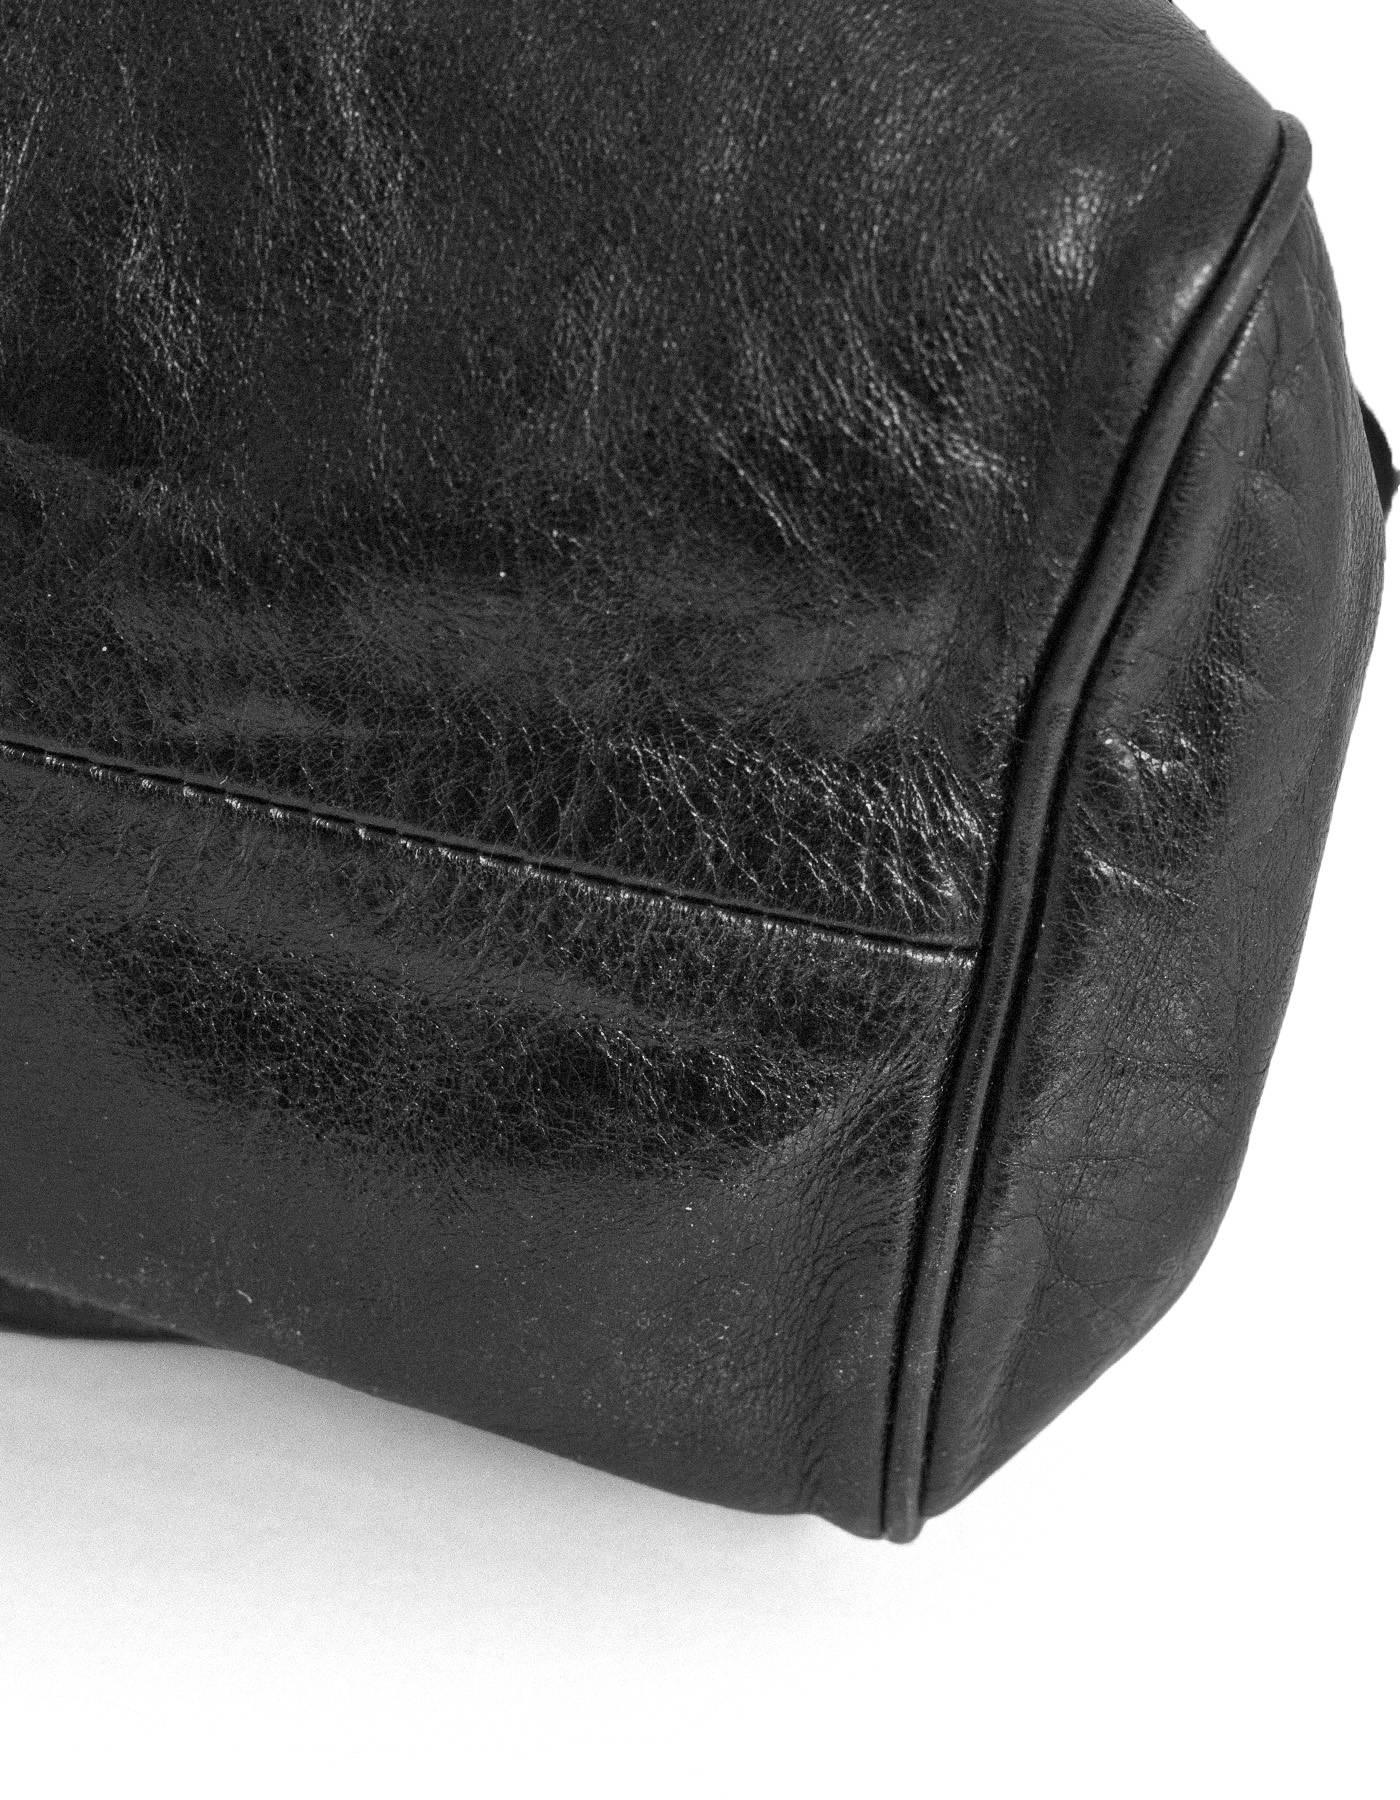 jimmy choo black leather bag